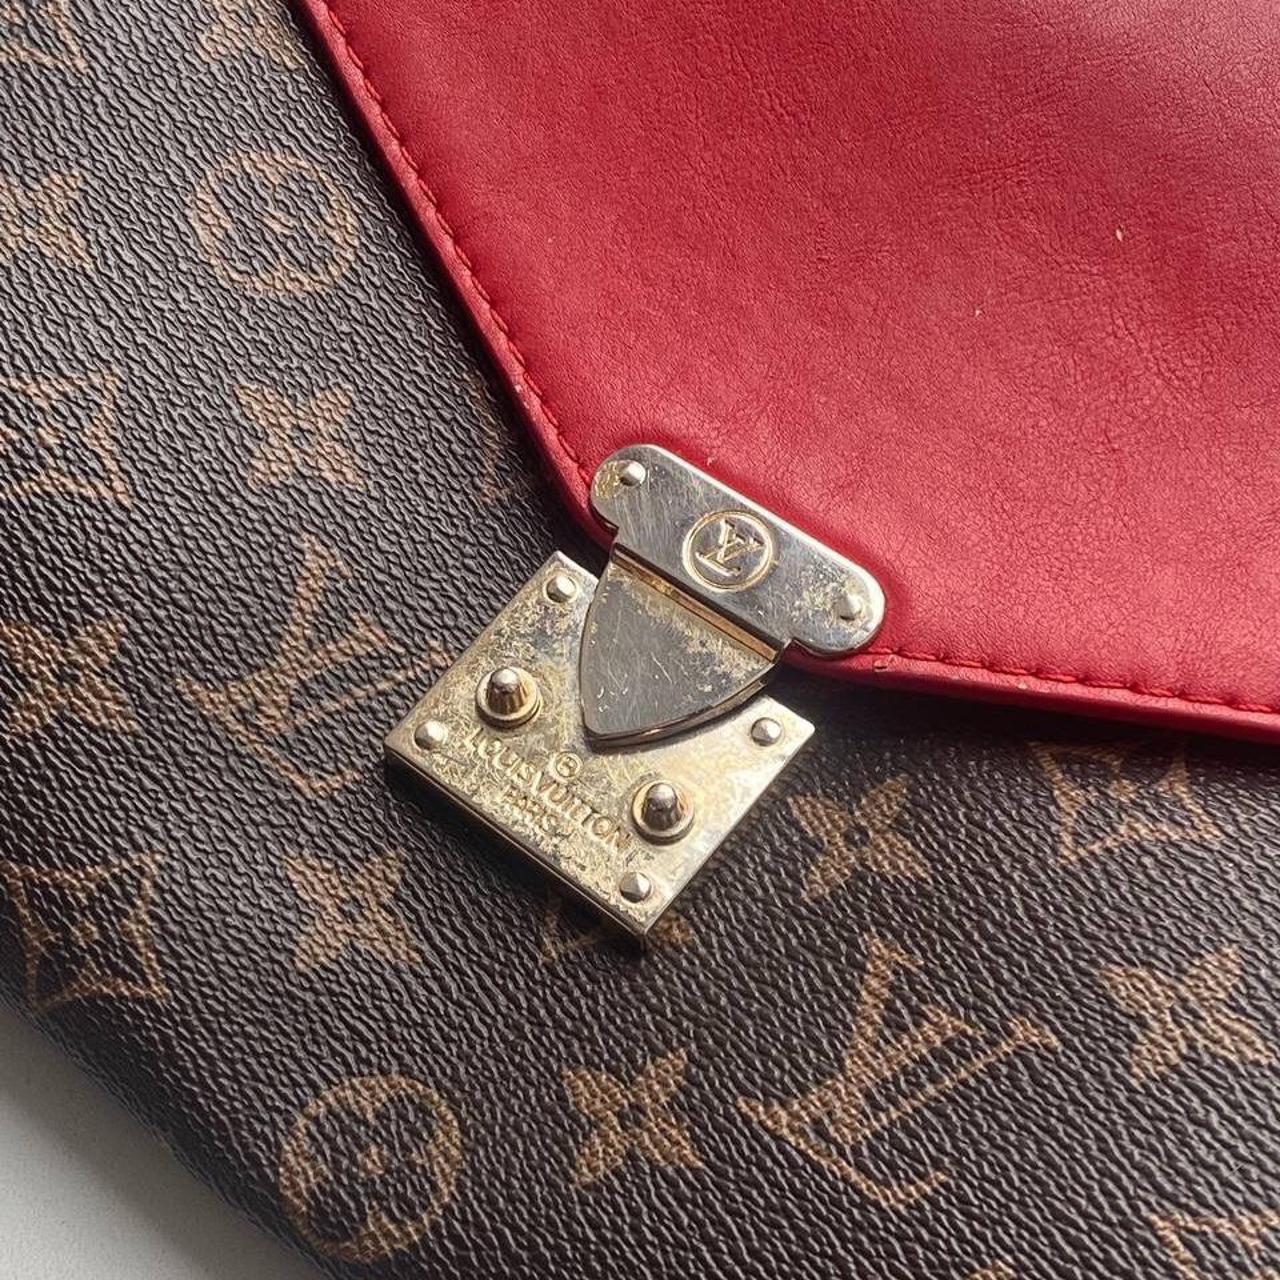 Authentic Vintage Louis Vuitton Mini Pleaty Shoulder - Depop